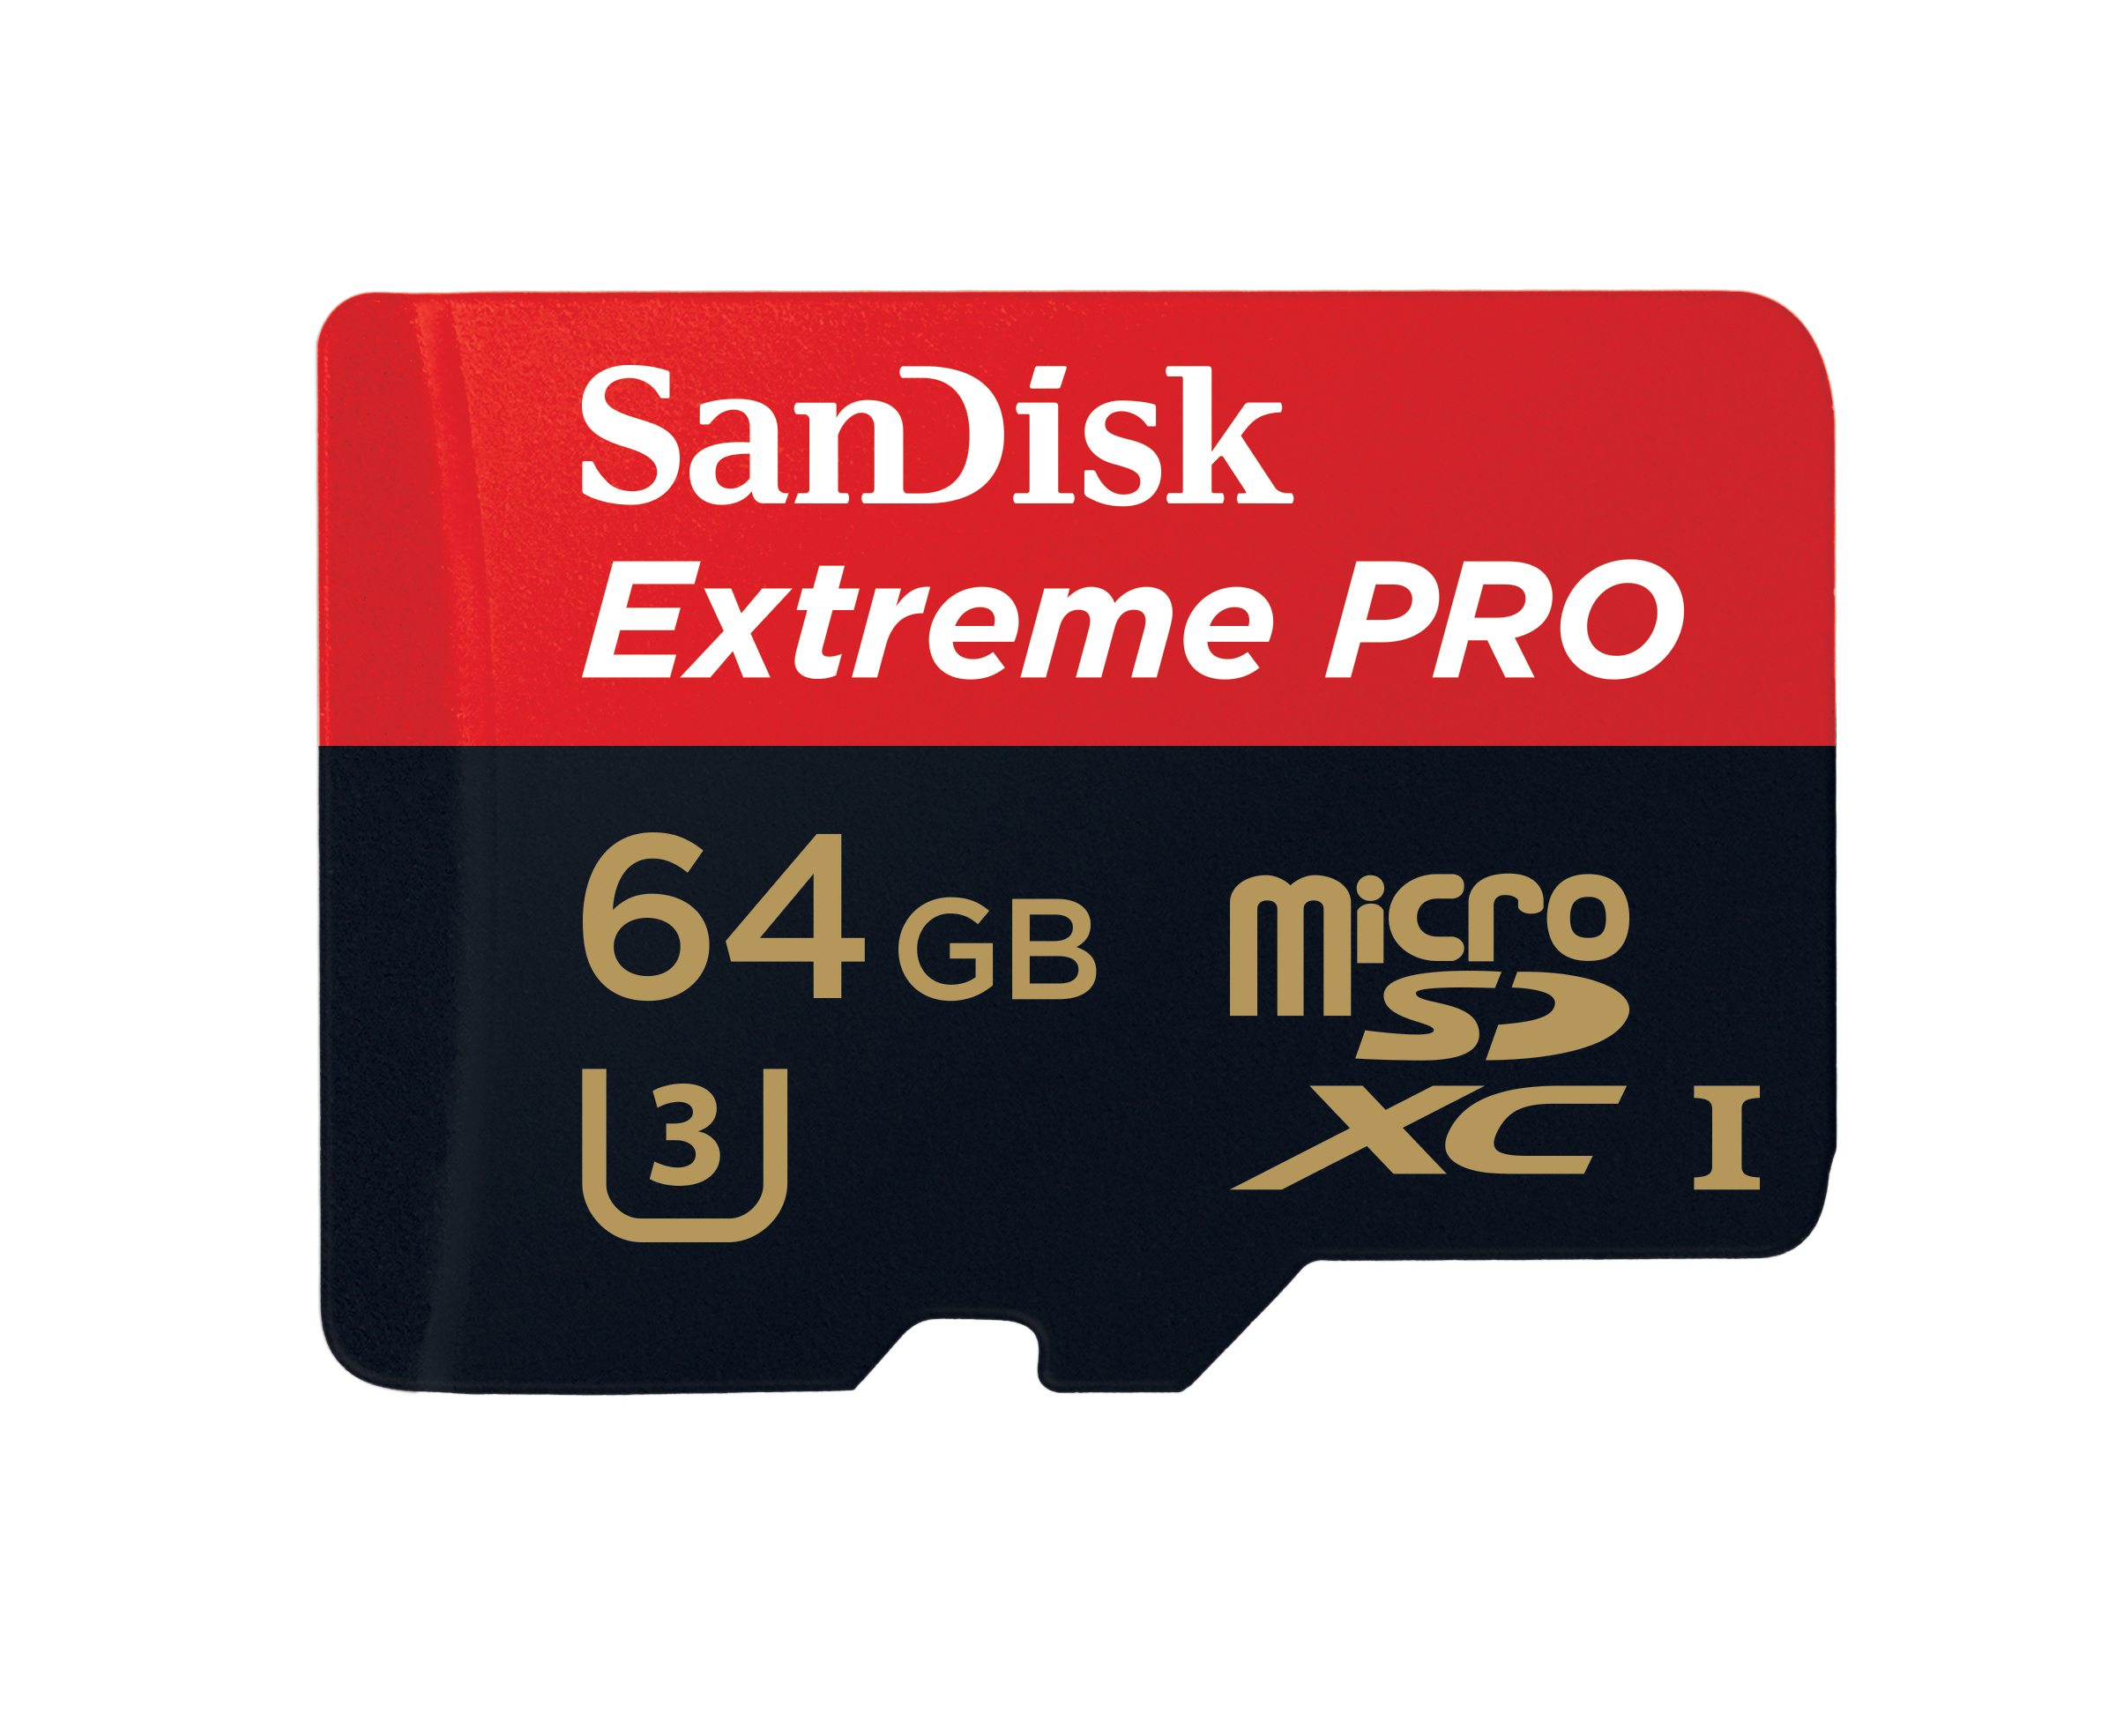 SanDisk Extreme Pro 64 GB Class 10/UHS-I microSDXC - image 2 of 2